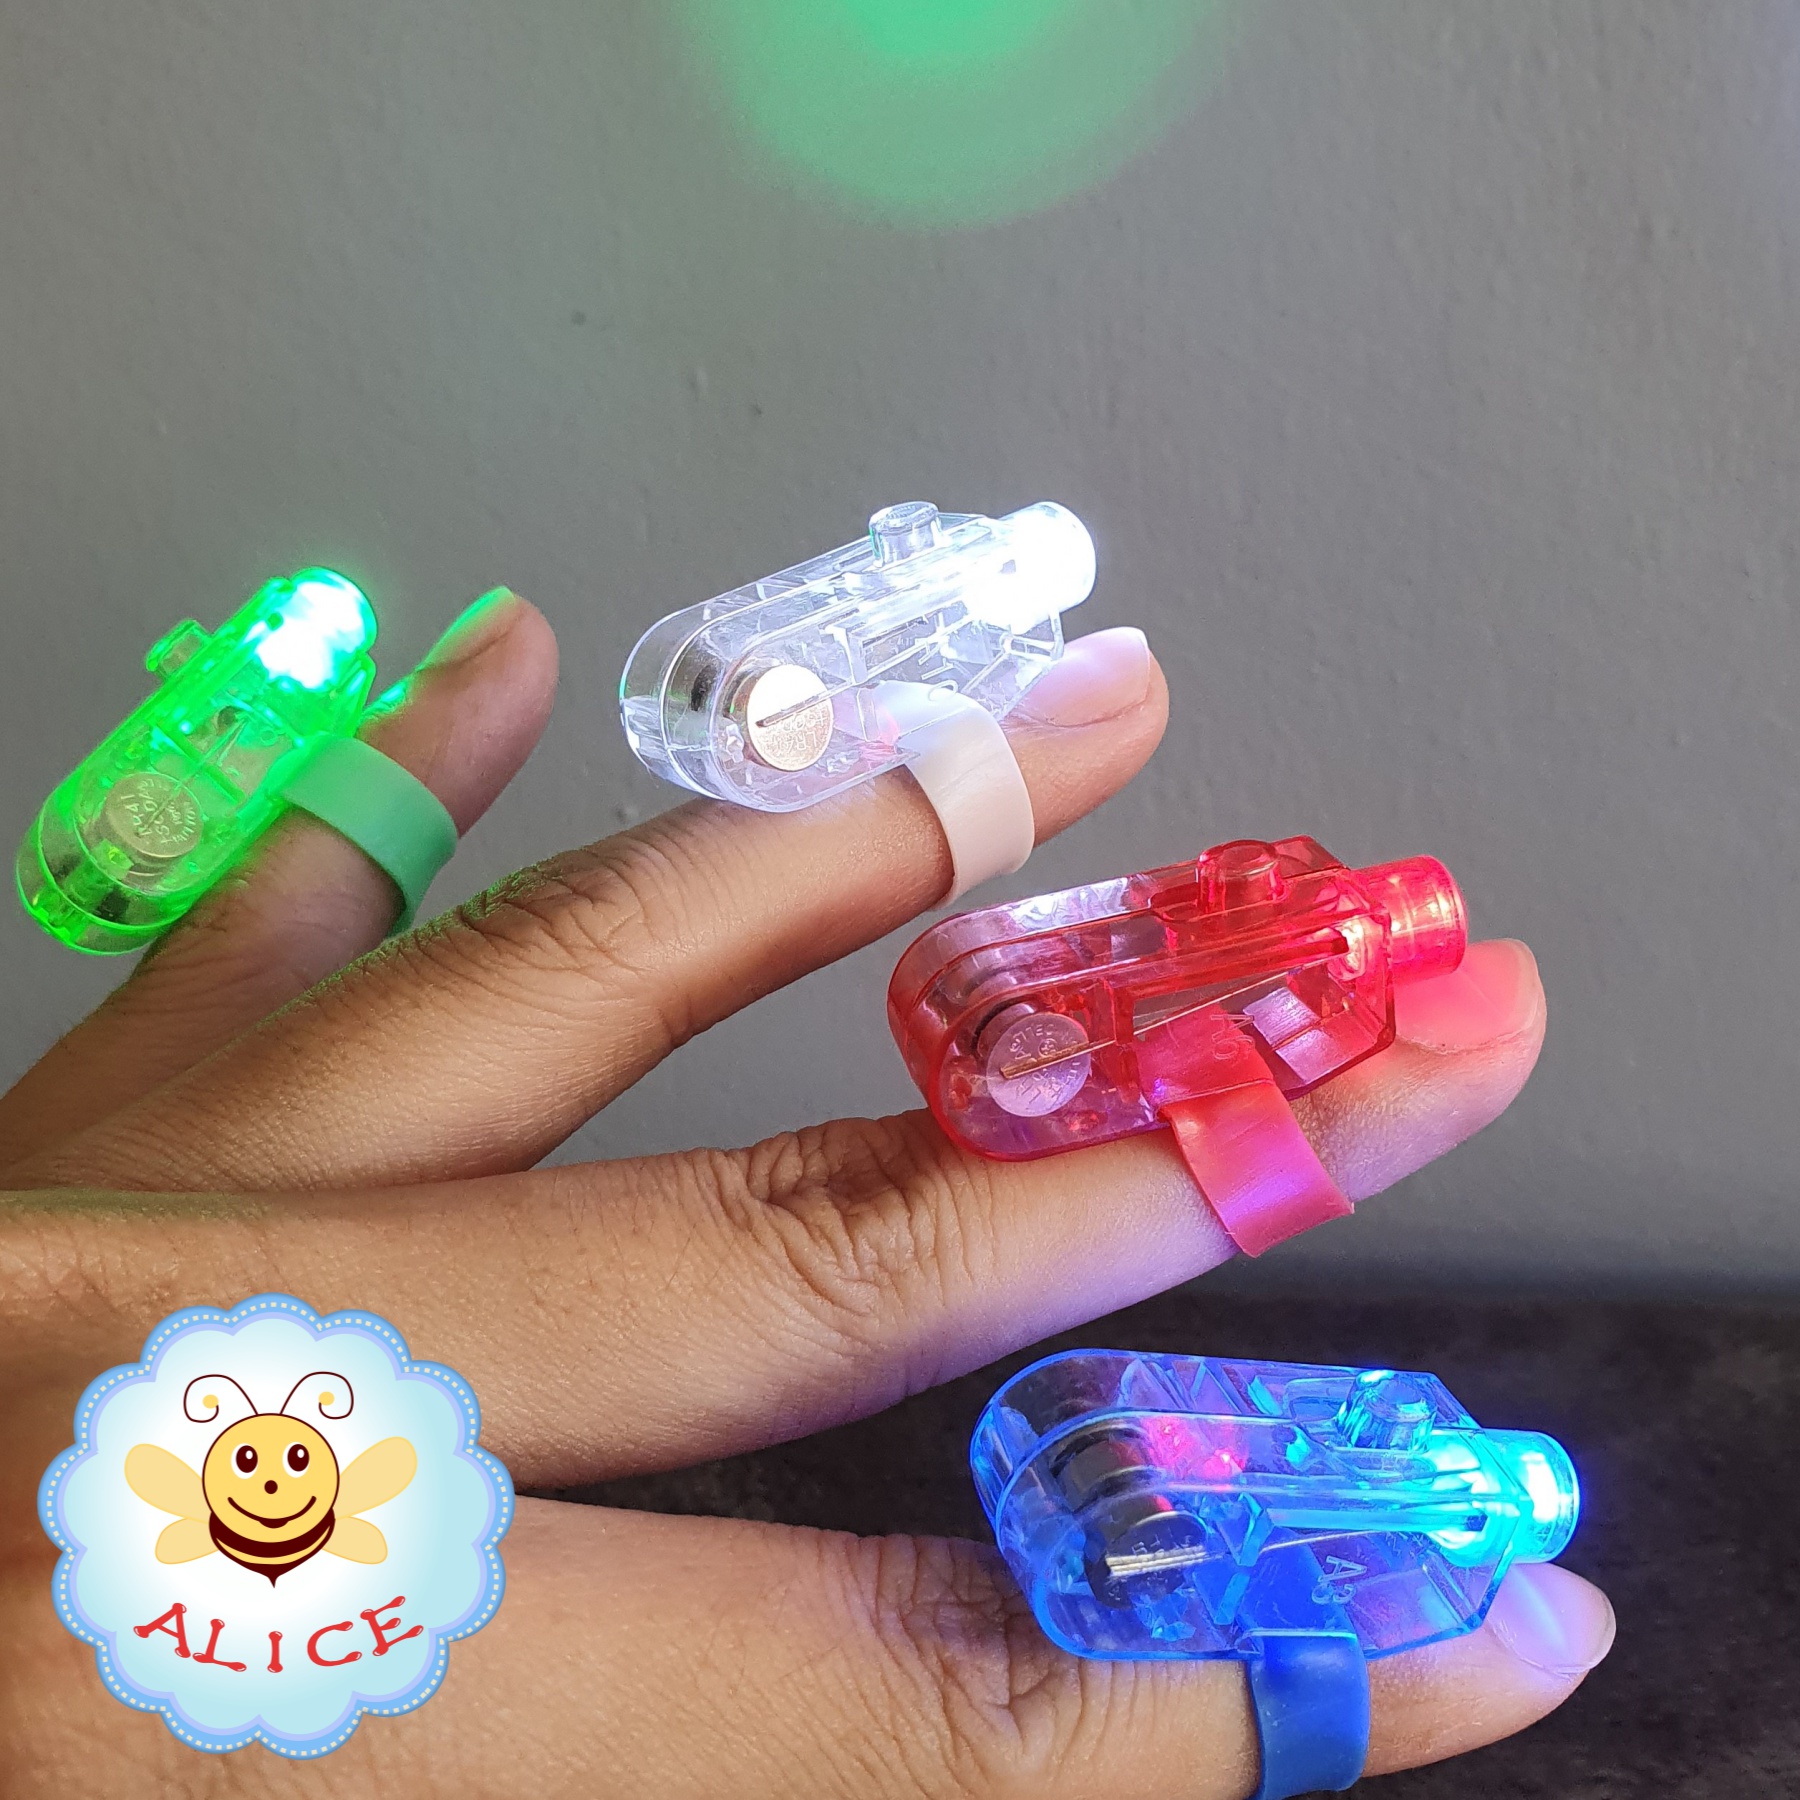 แหวนไฟ LED Ring แหวนเปิดไฟได้ มีแบตเตอรี่ในตัว alicdolly